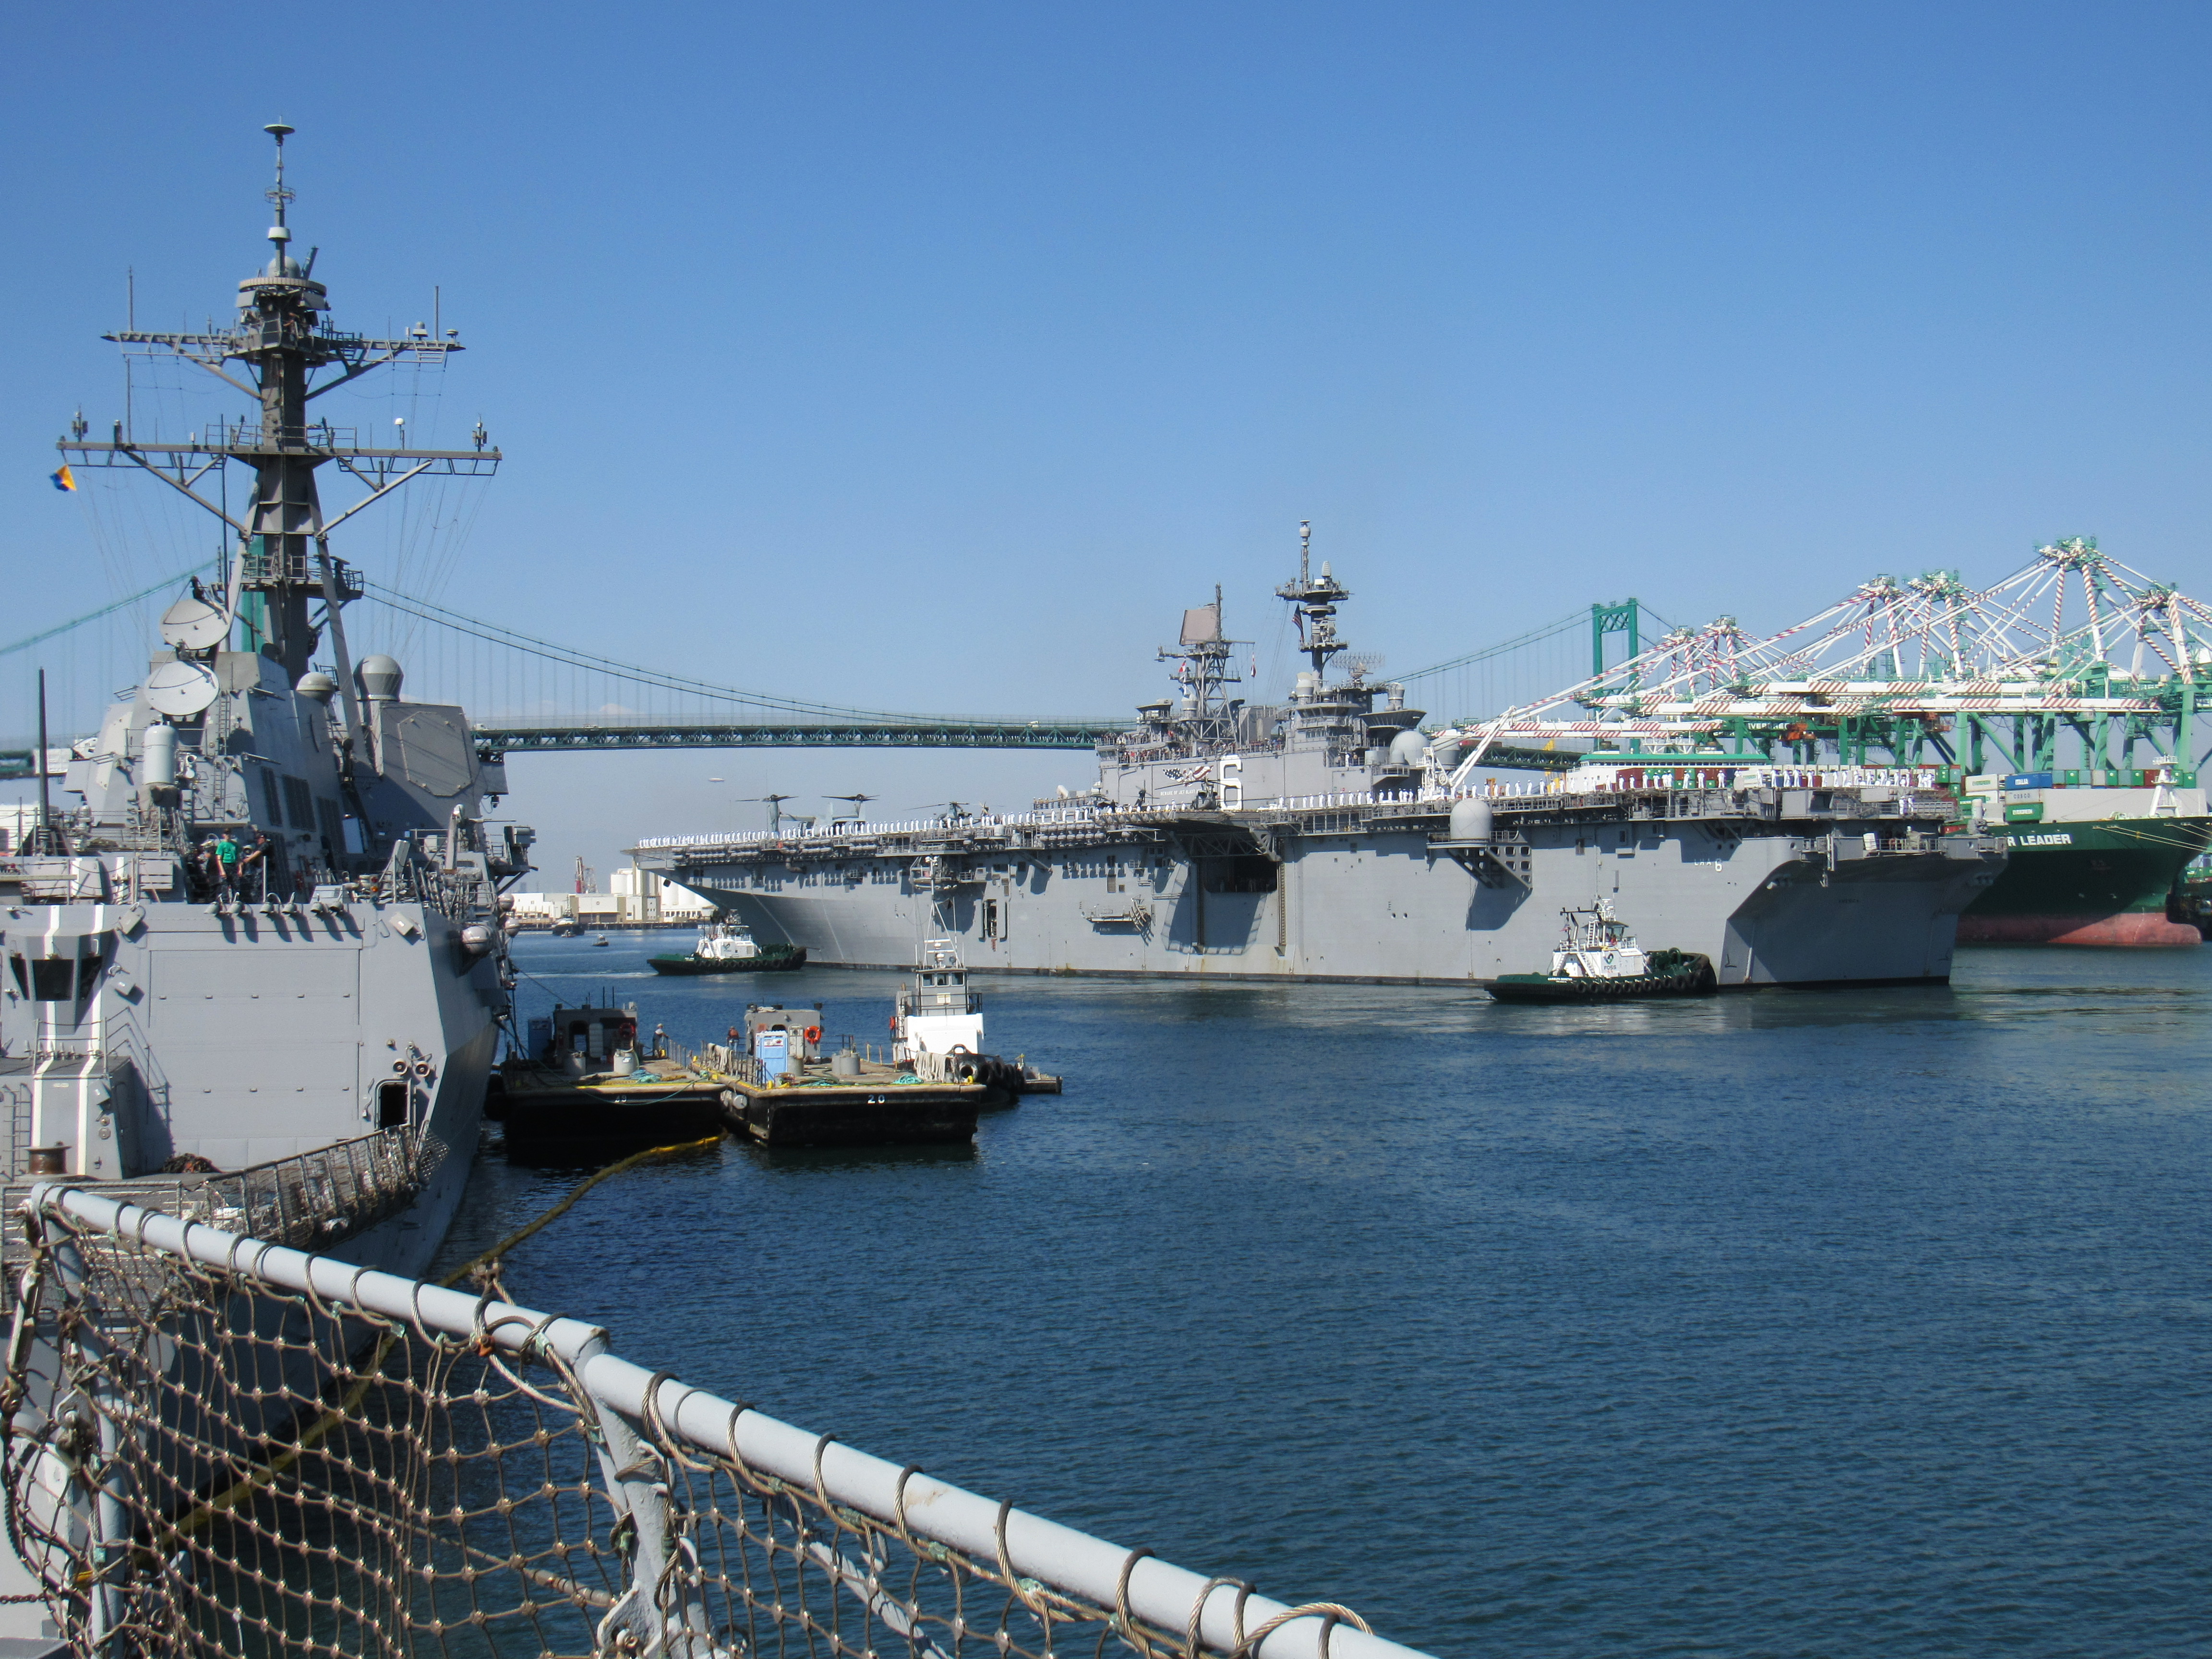 LHA 6 USS America Amphibious Assault ship arrives in Los Angeles for LA Fleet Week